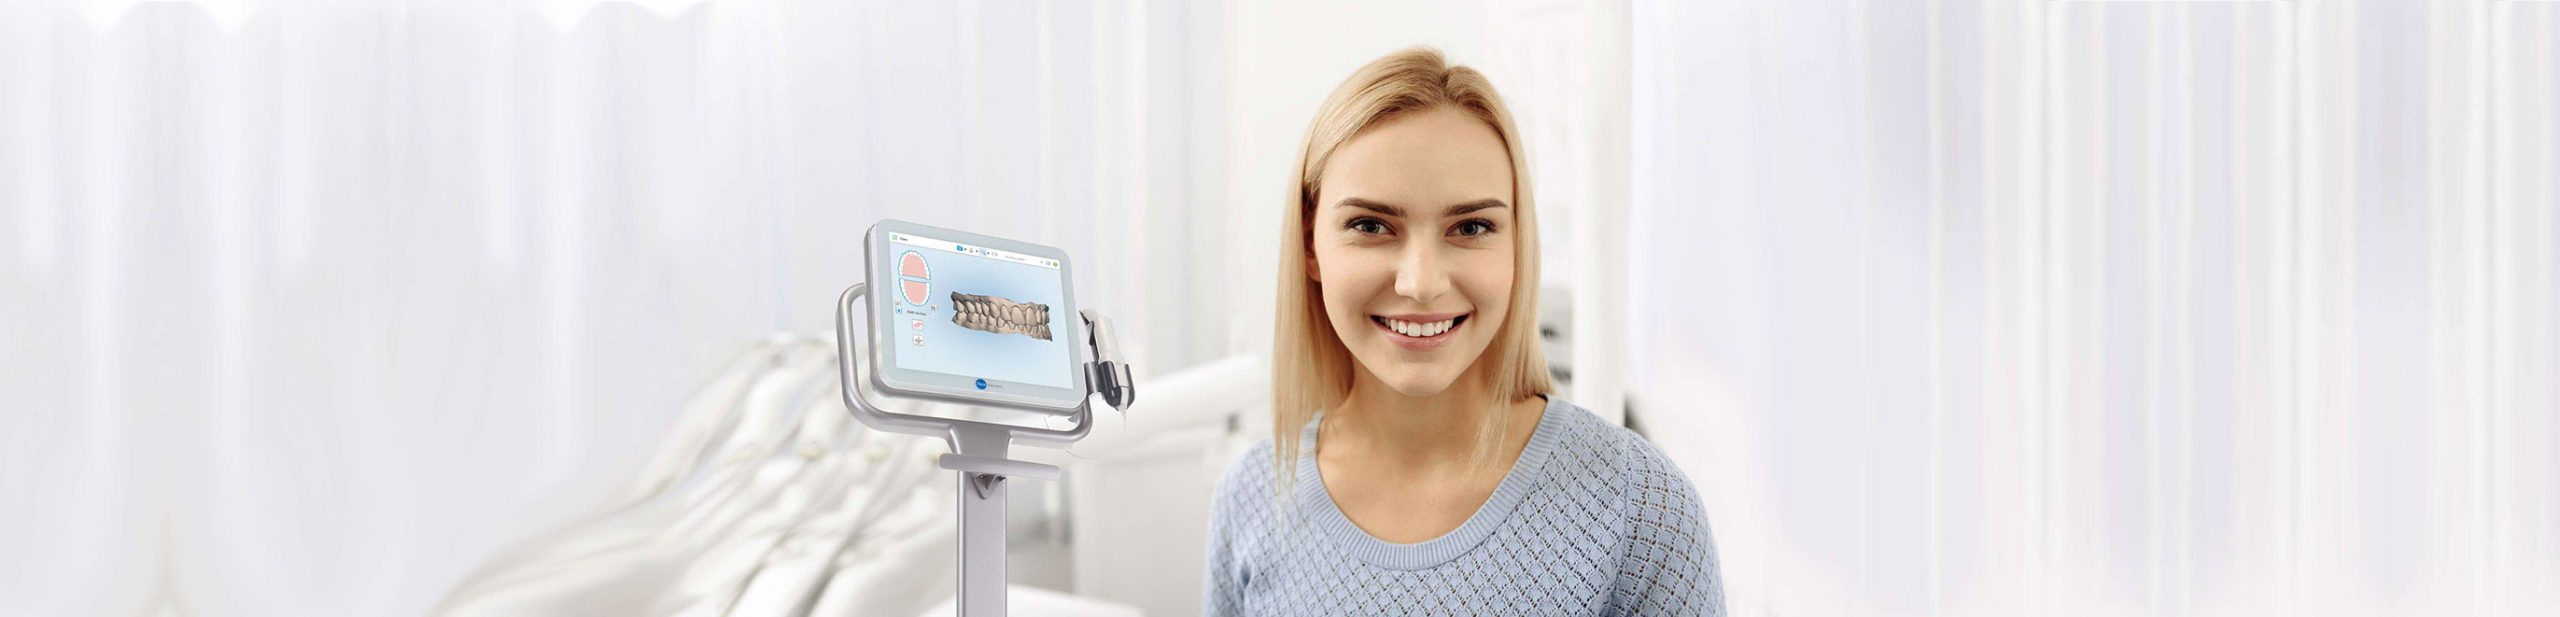 Angenehmer lächelnder Patient in der Zahnarztpraxis